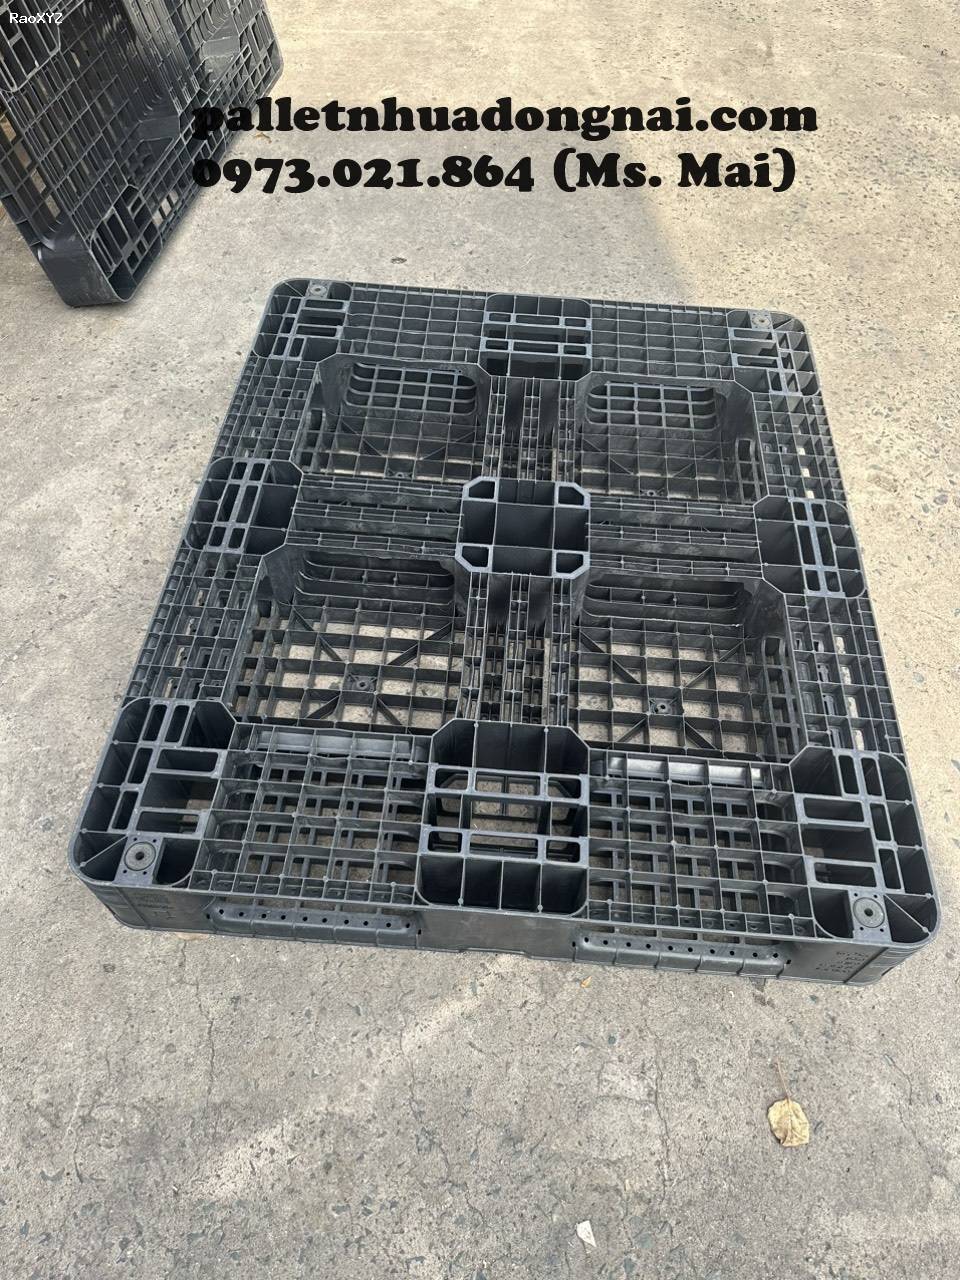 Pallet nhựa giá rẻ tại Tây Ninh, liên hệ 0973021864 (24/7)